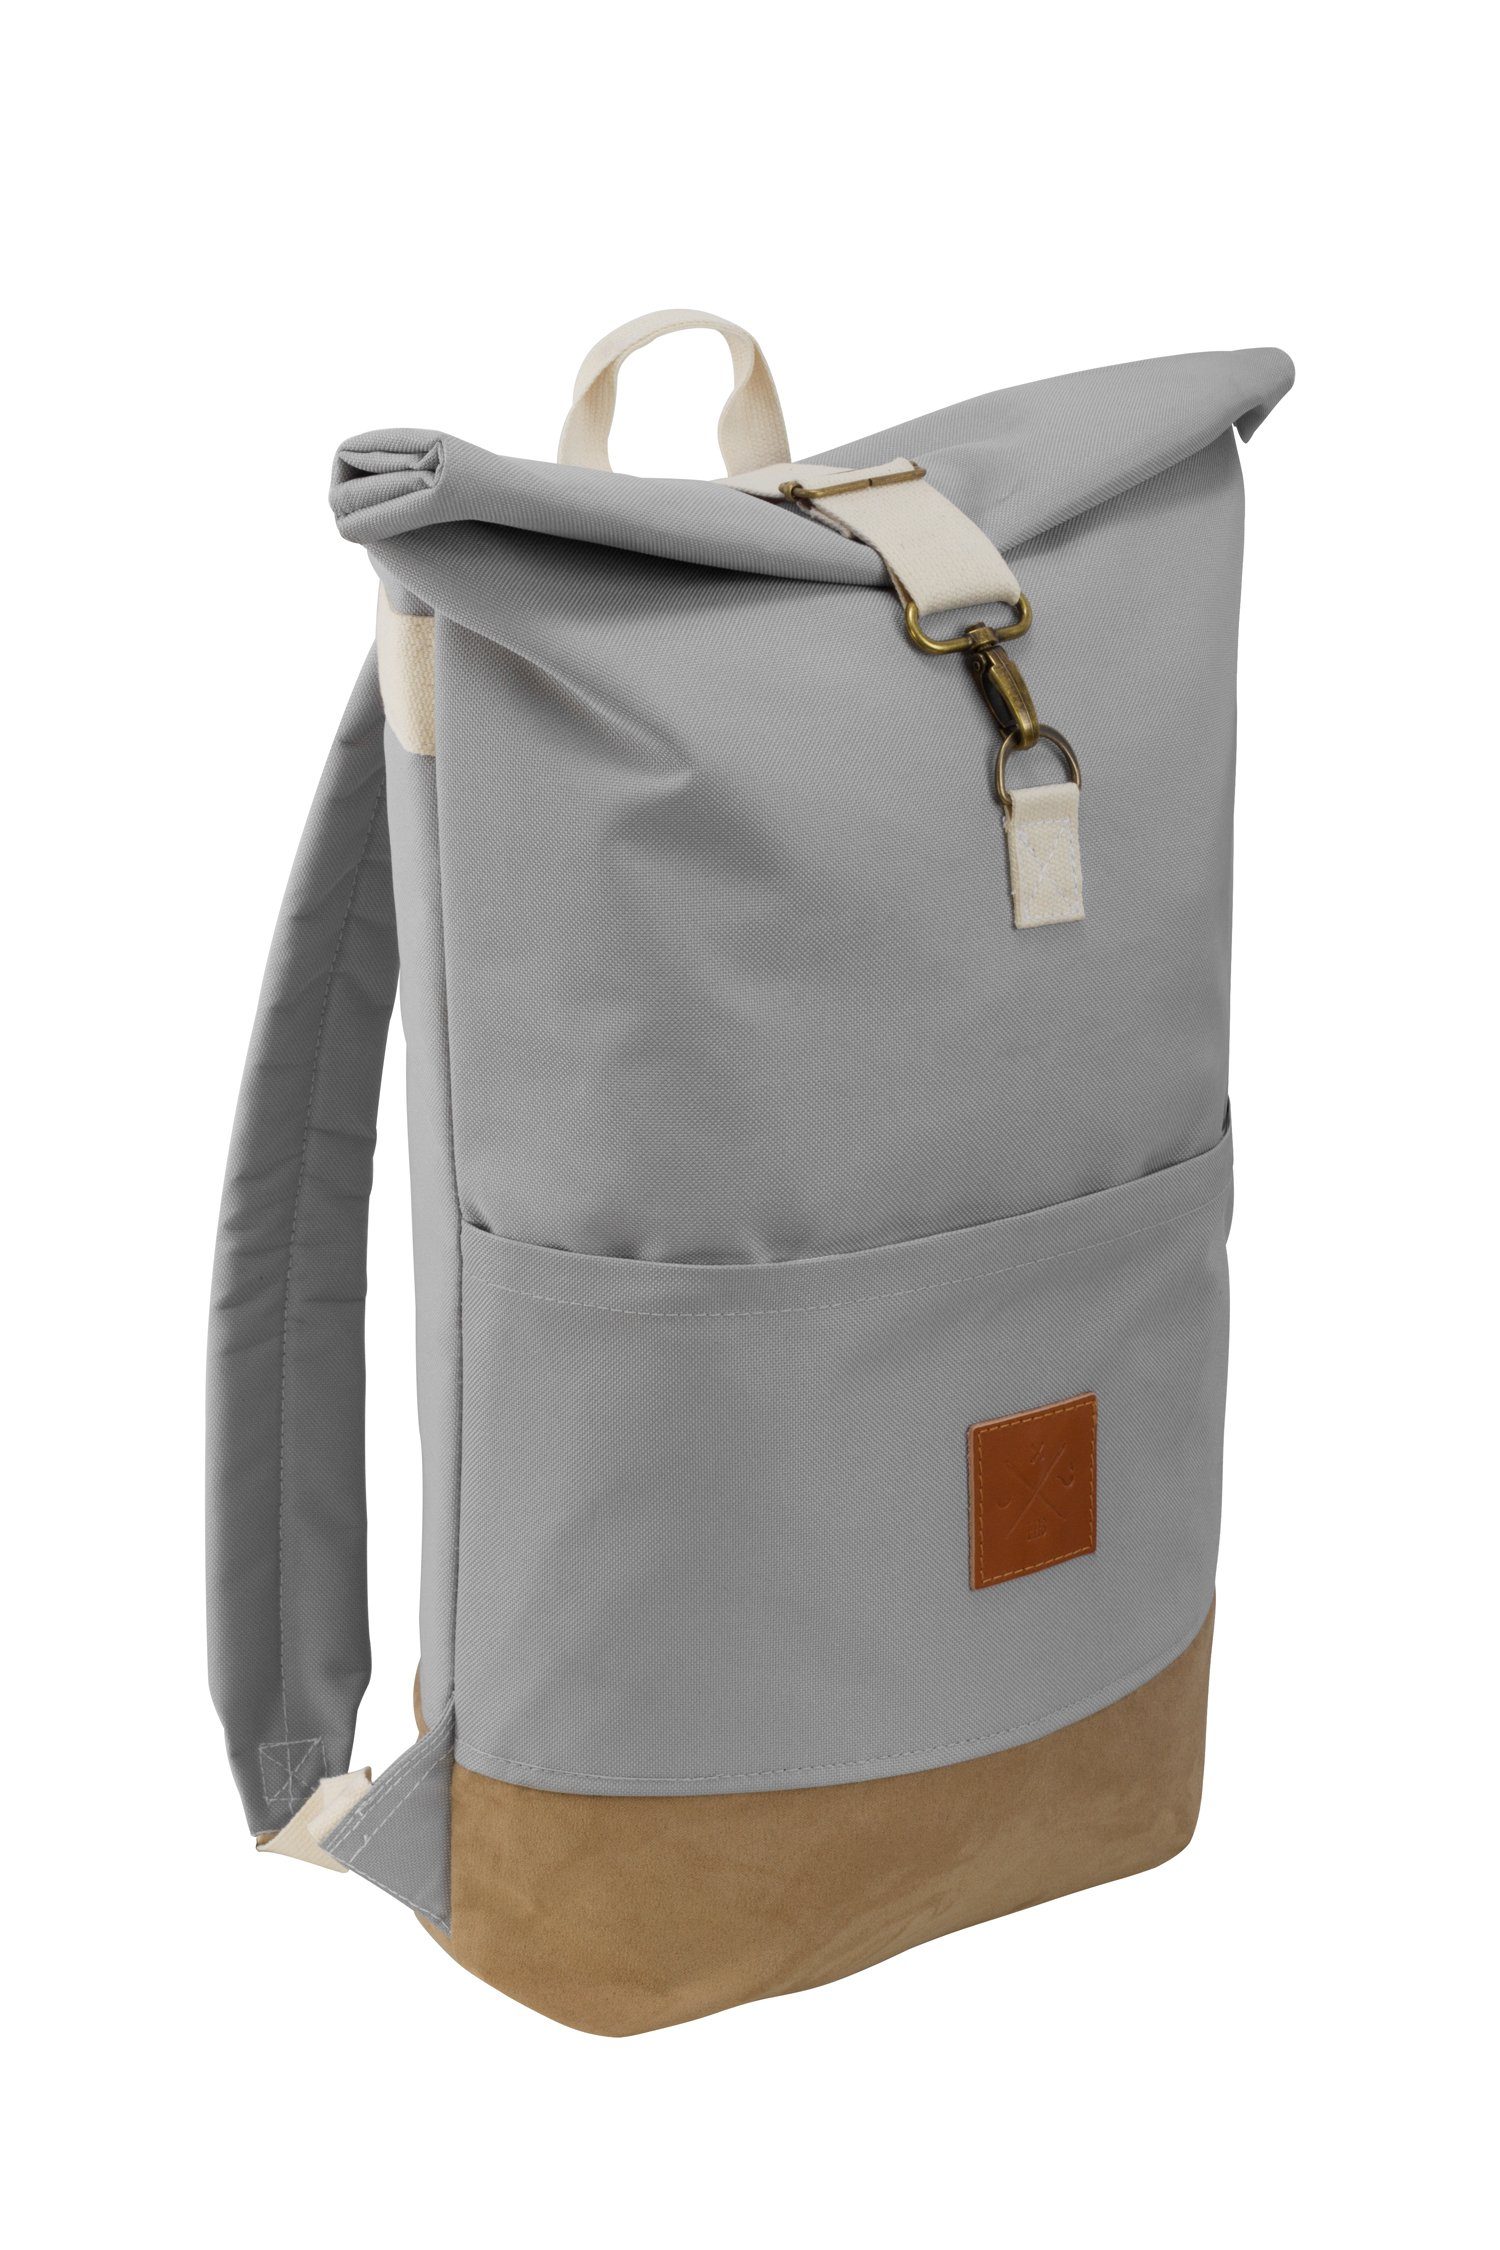 verstellbare Manufaktur13 Backpack - mit II Canvas Rollverschluss, wasserdicht/wasserabweisend, Roll-Top Wood Rucksack Tagesrucksack Gurte